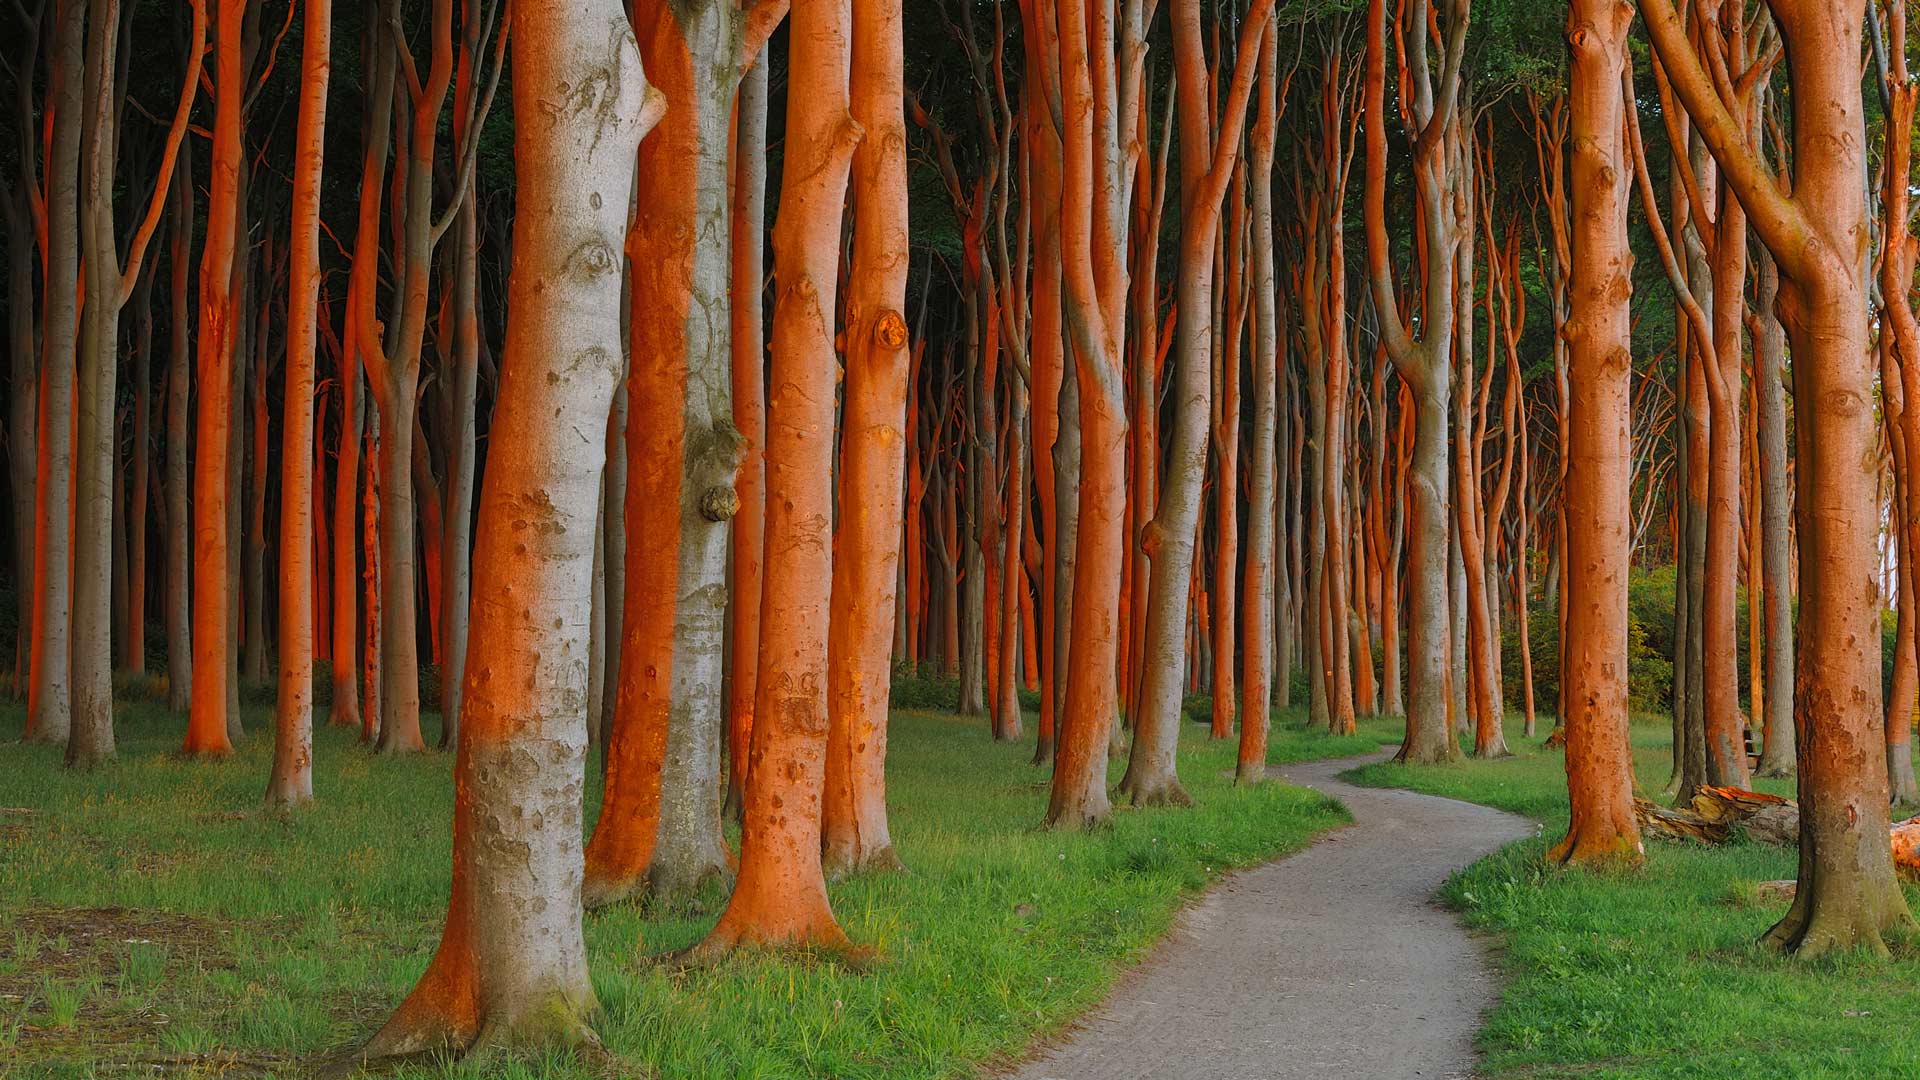 Beech forest in Nienhagen, Germany